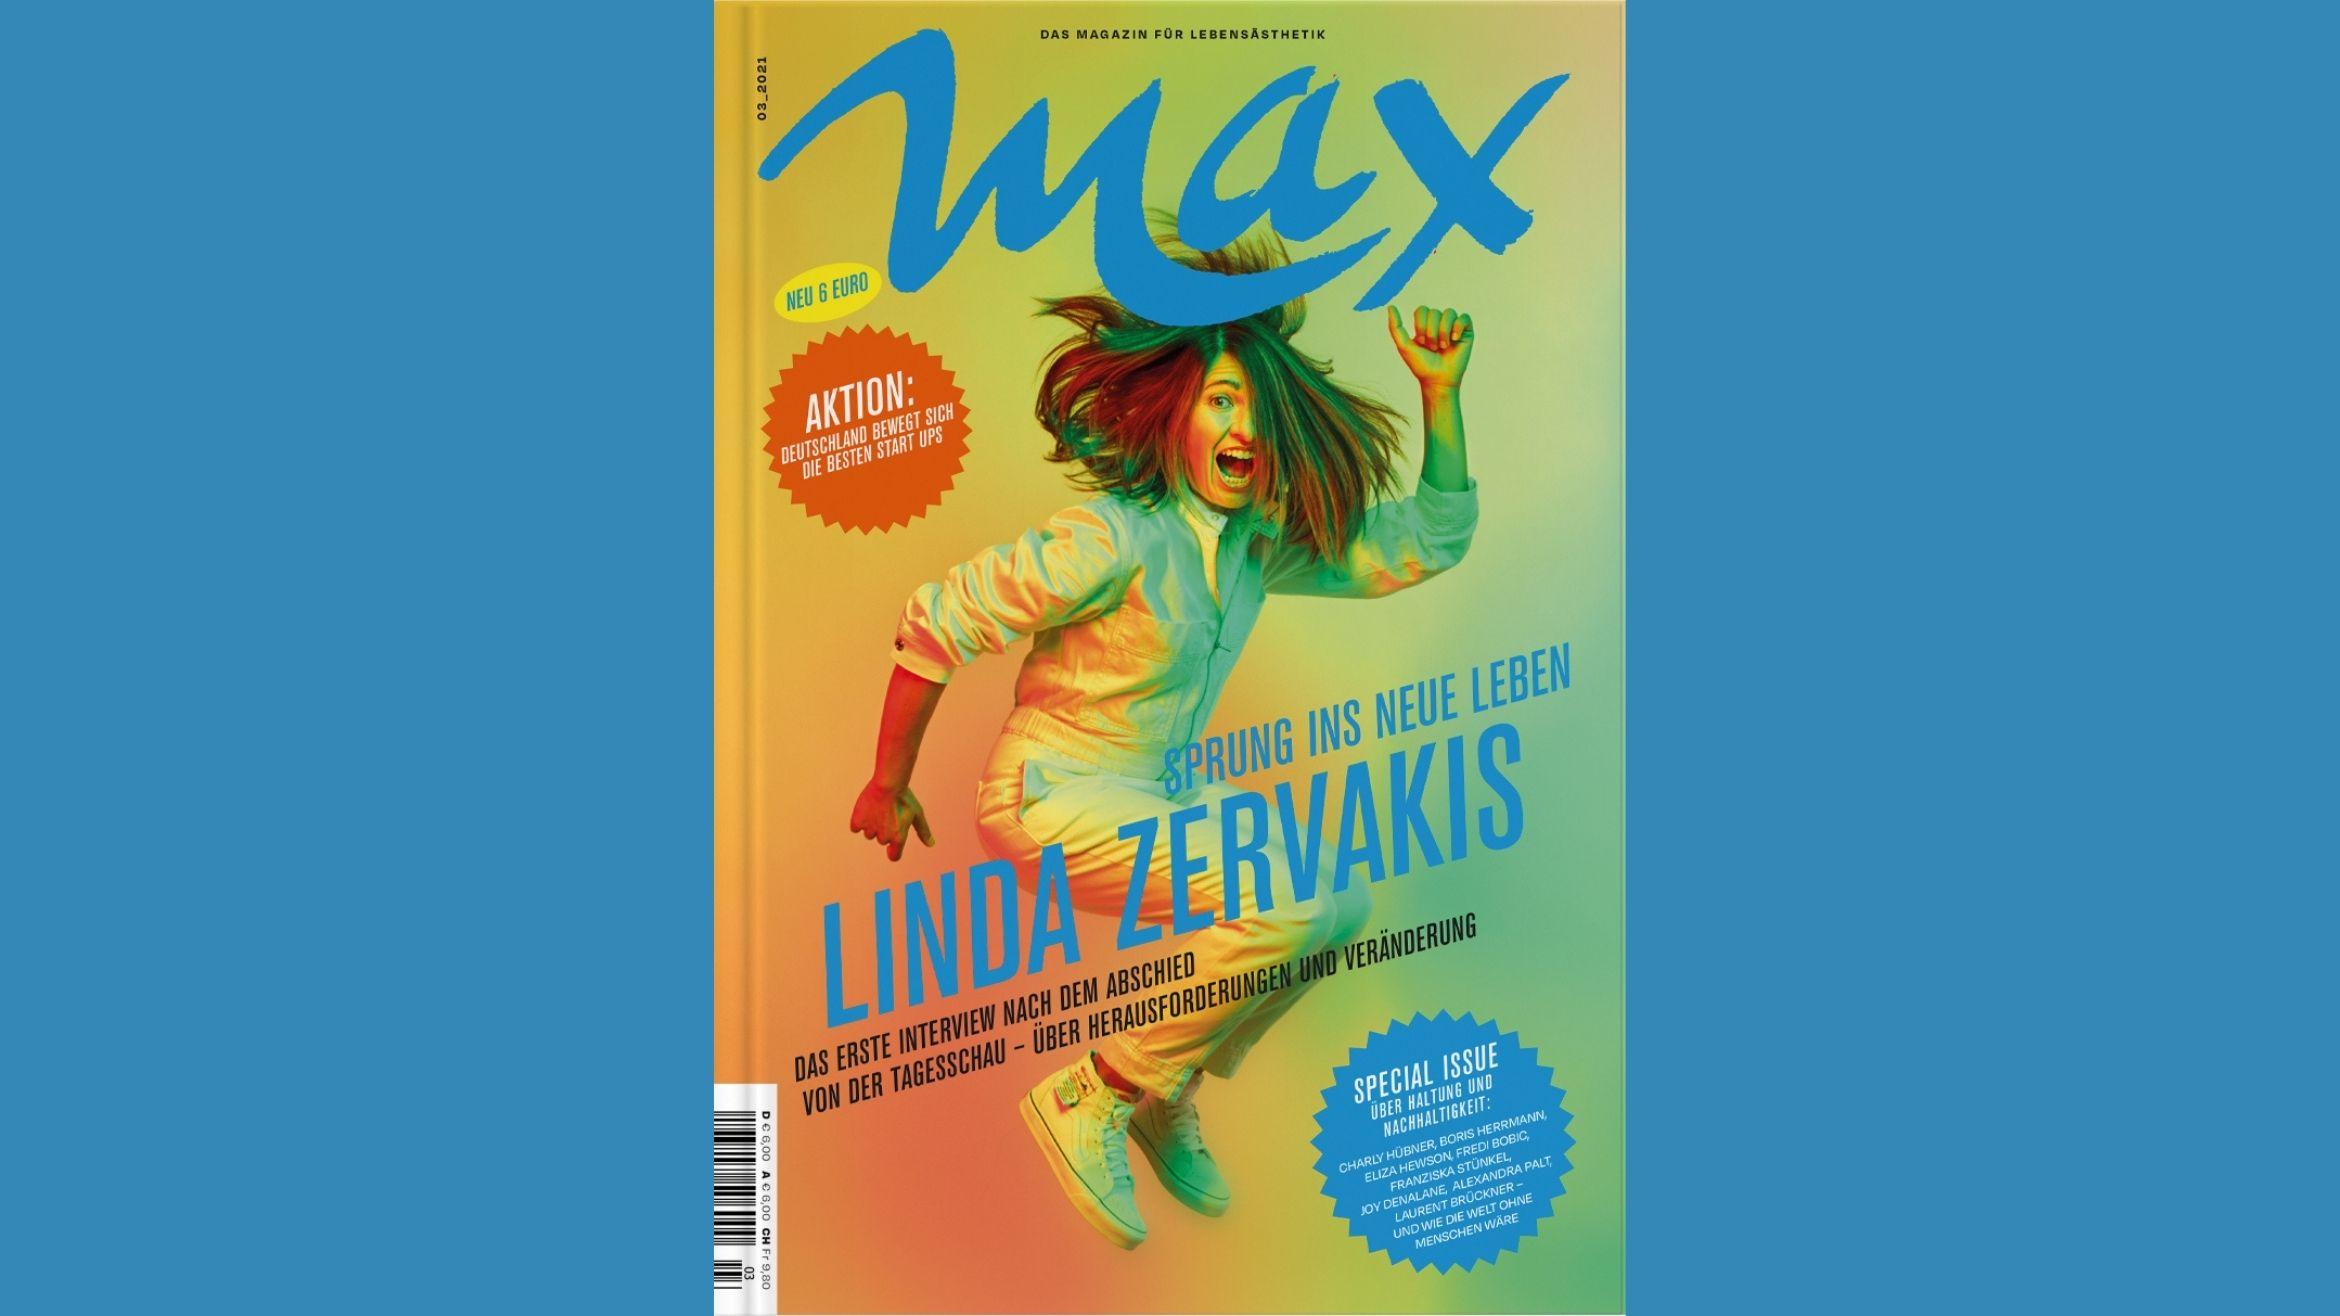 "Max" will sich weiter als "Magazin für Lebensästhetik" verstanden wissen –